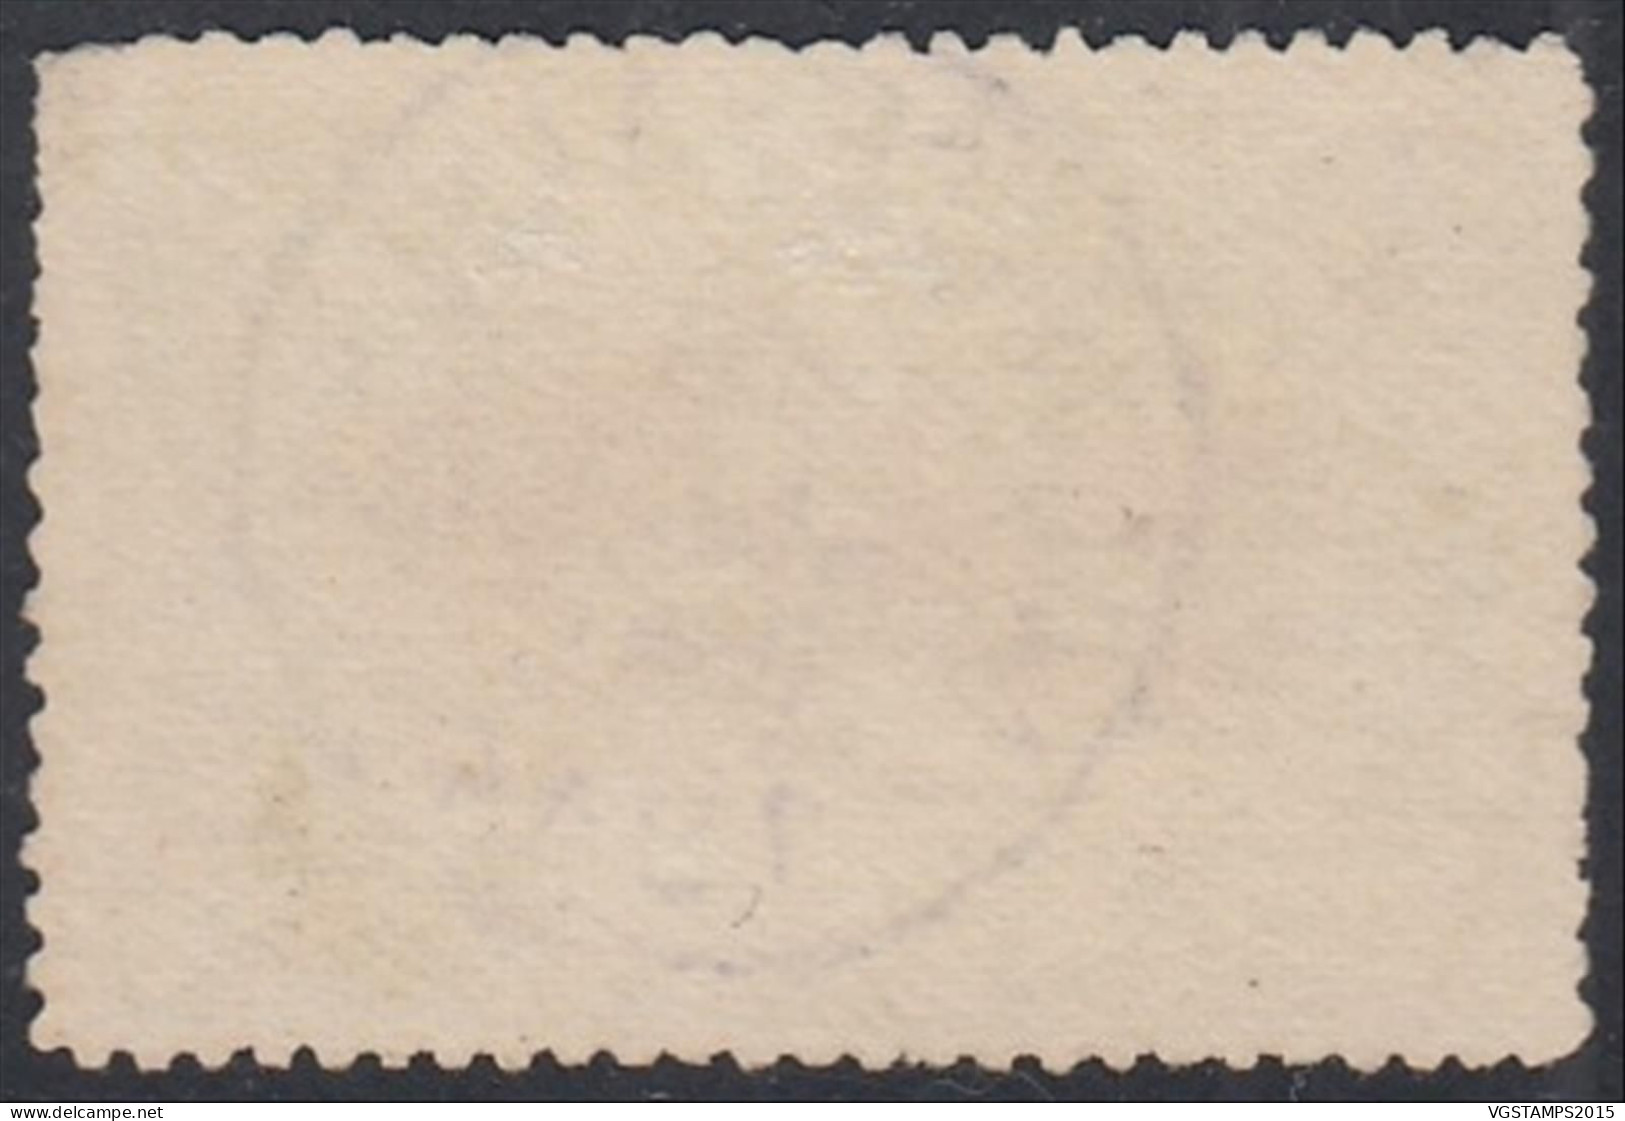 Congo Belge 1914 - Timbre Oblitéré. COB Nr.: 53. Oblitéré: "NOUVELLE ANVERS". Infime Fault..... (EB) AR-02745 - Used Stamps